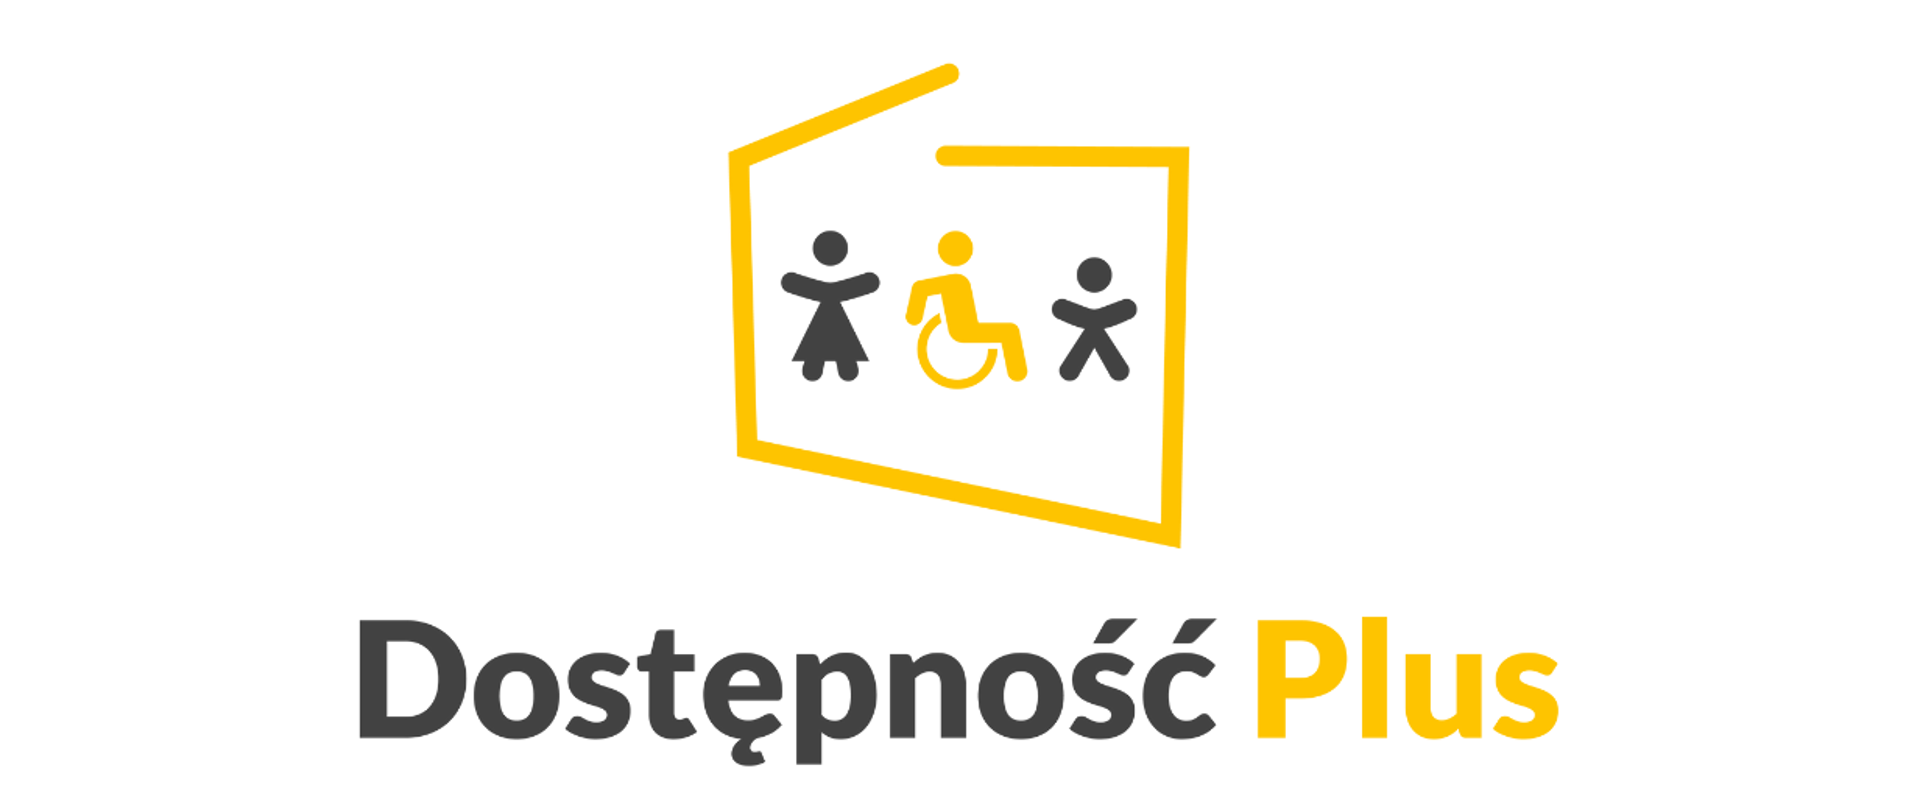 Uproszczona mapa Polski oznaczona żółtym kolorem, w środku trzy postaci: kobieta, mężczyzna na wózku i dziecko